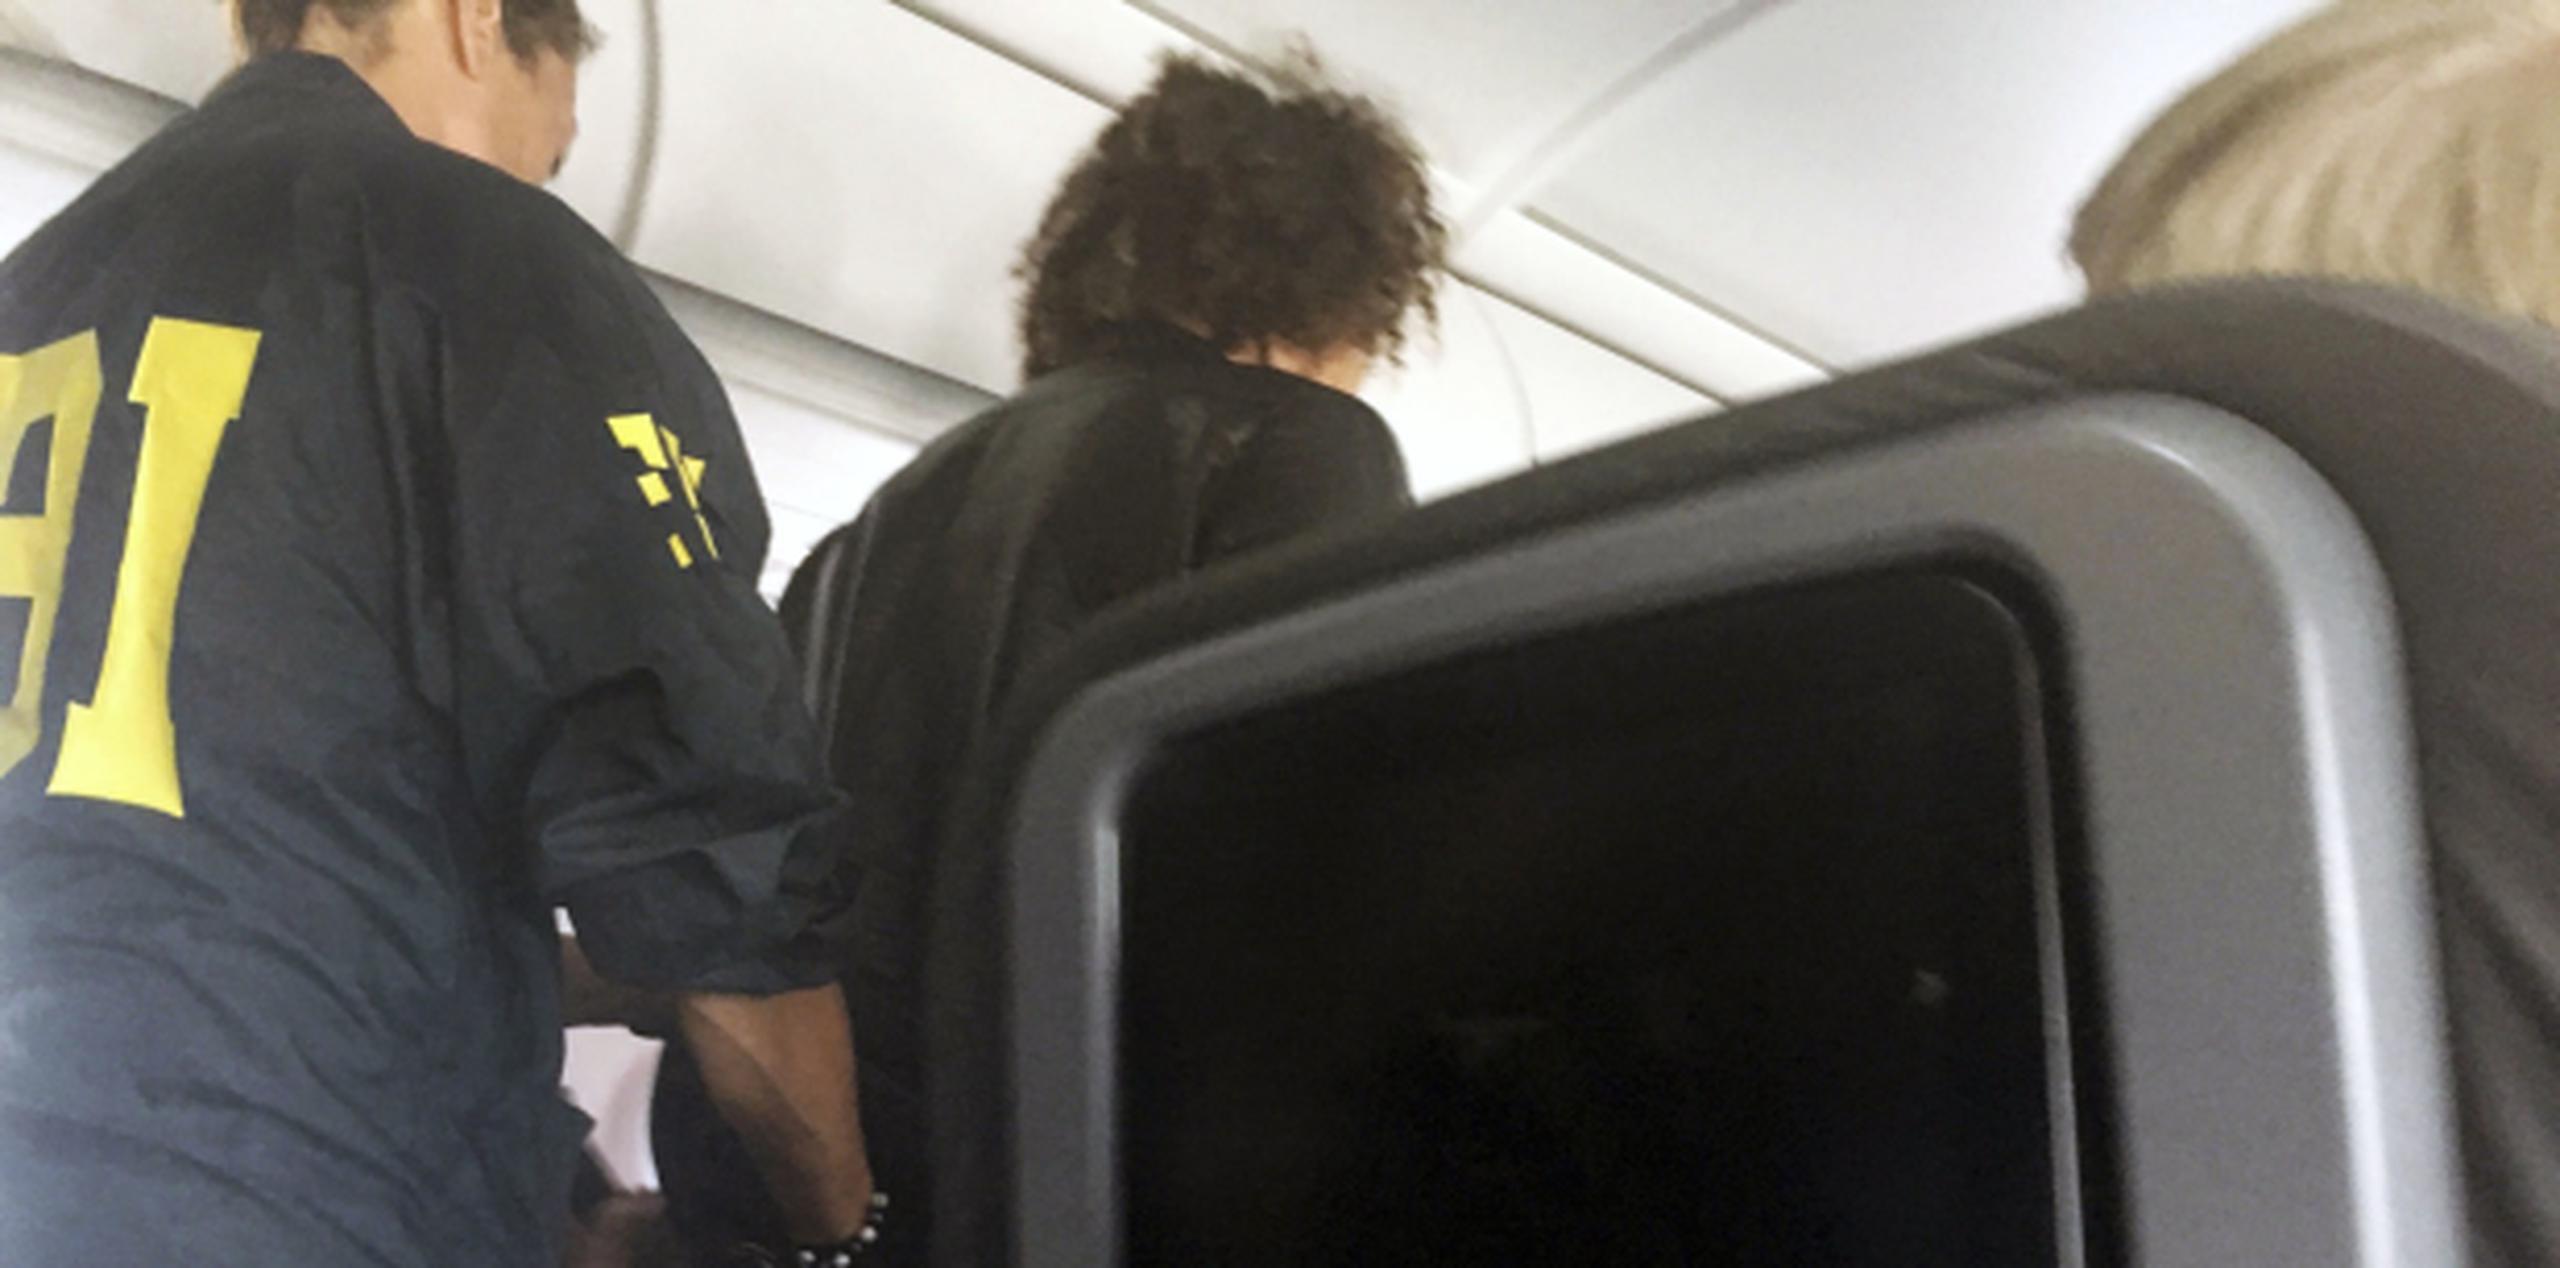 El individuo fue amarrado con cinta adhesiva a su asiento hasta que el avión aterrizó. (Donna Basden vía AP)